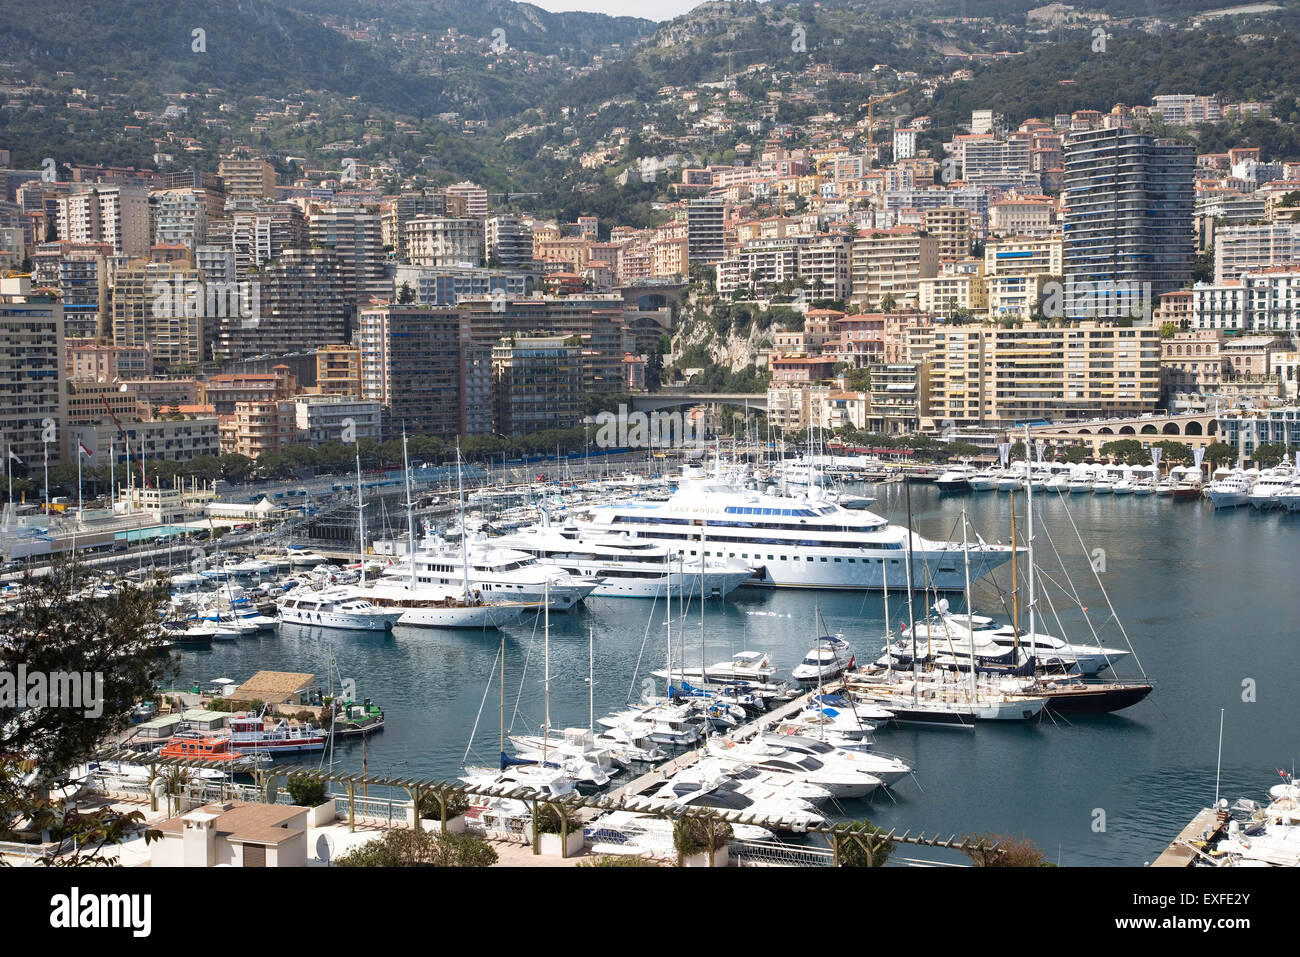 Avis de yachts de luxe amarrés dans le port, Montecarlo, Monaco Banque D'Images